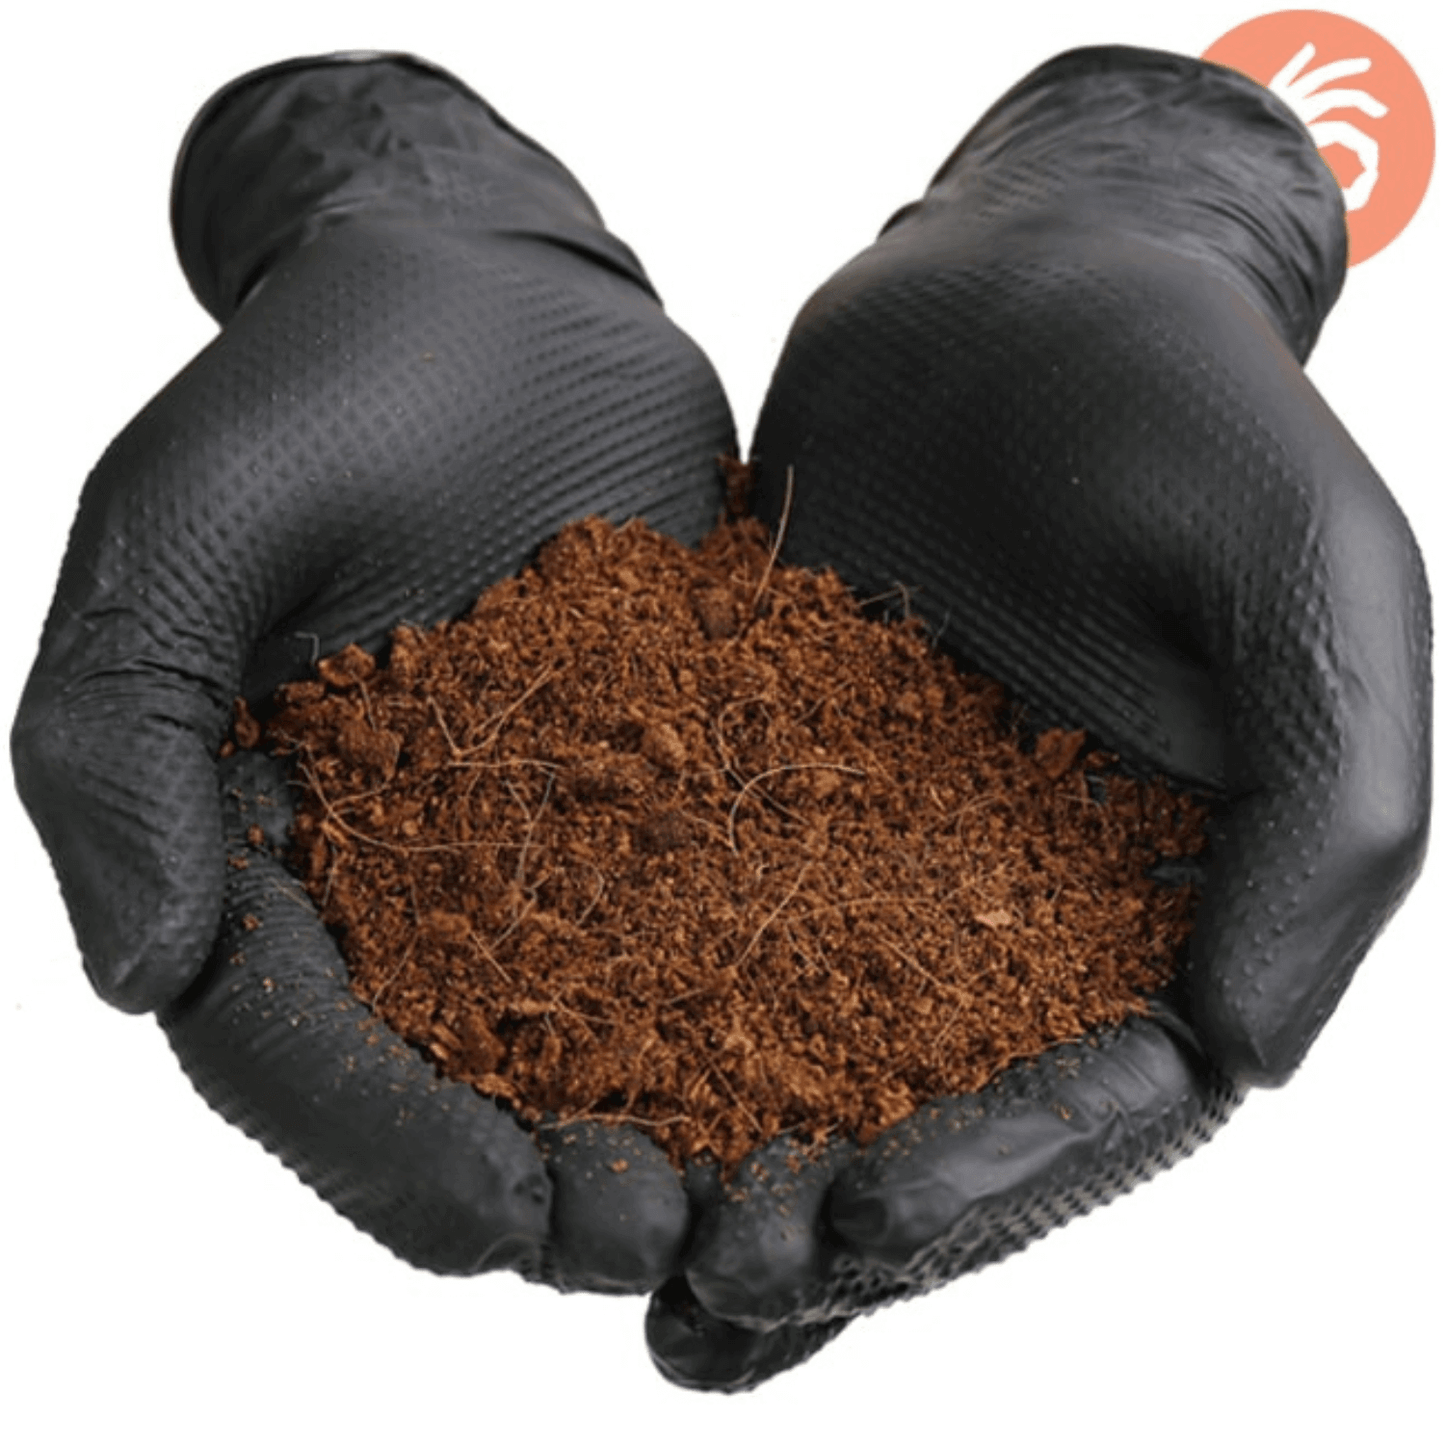 Dirt Defense 6mil Nitrile Gloves Large 100 Pack 671102 Harvest & Extraction 816731016308